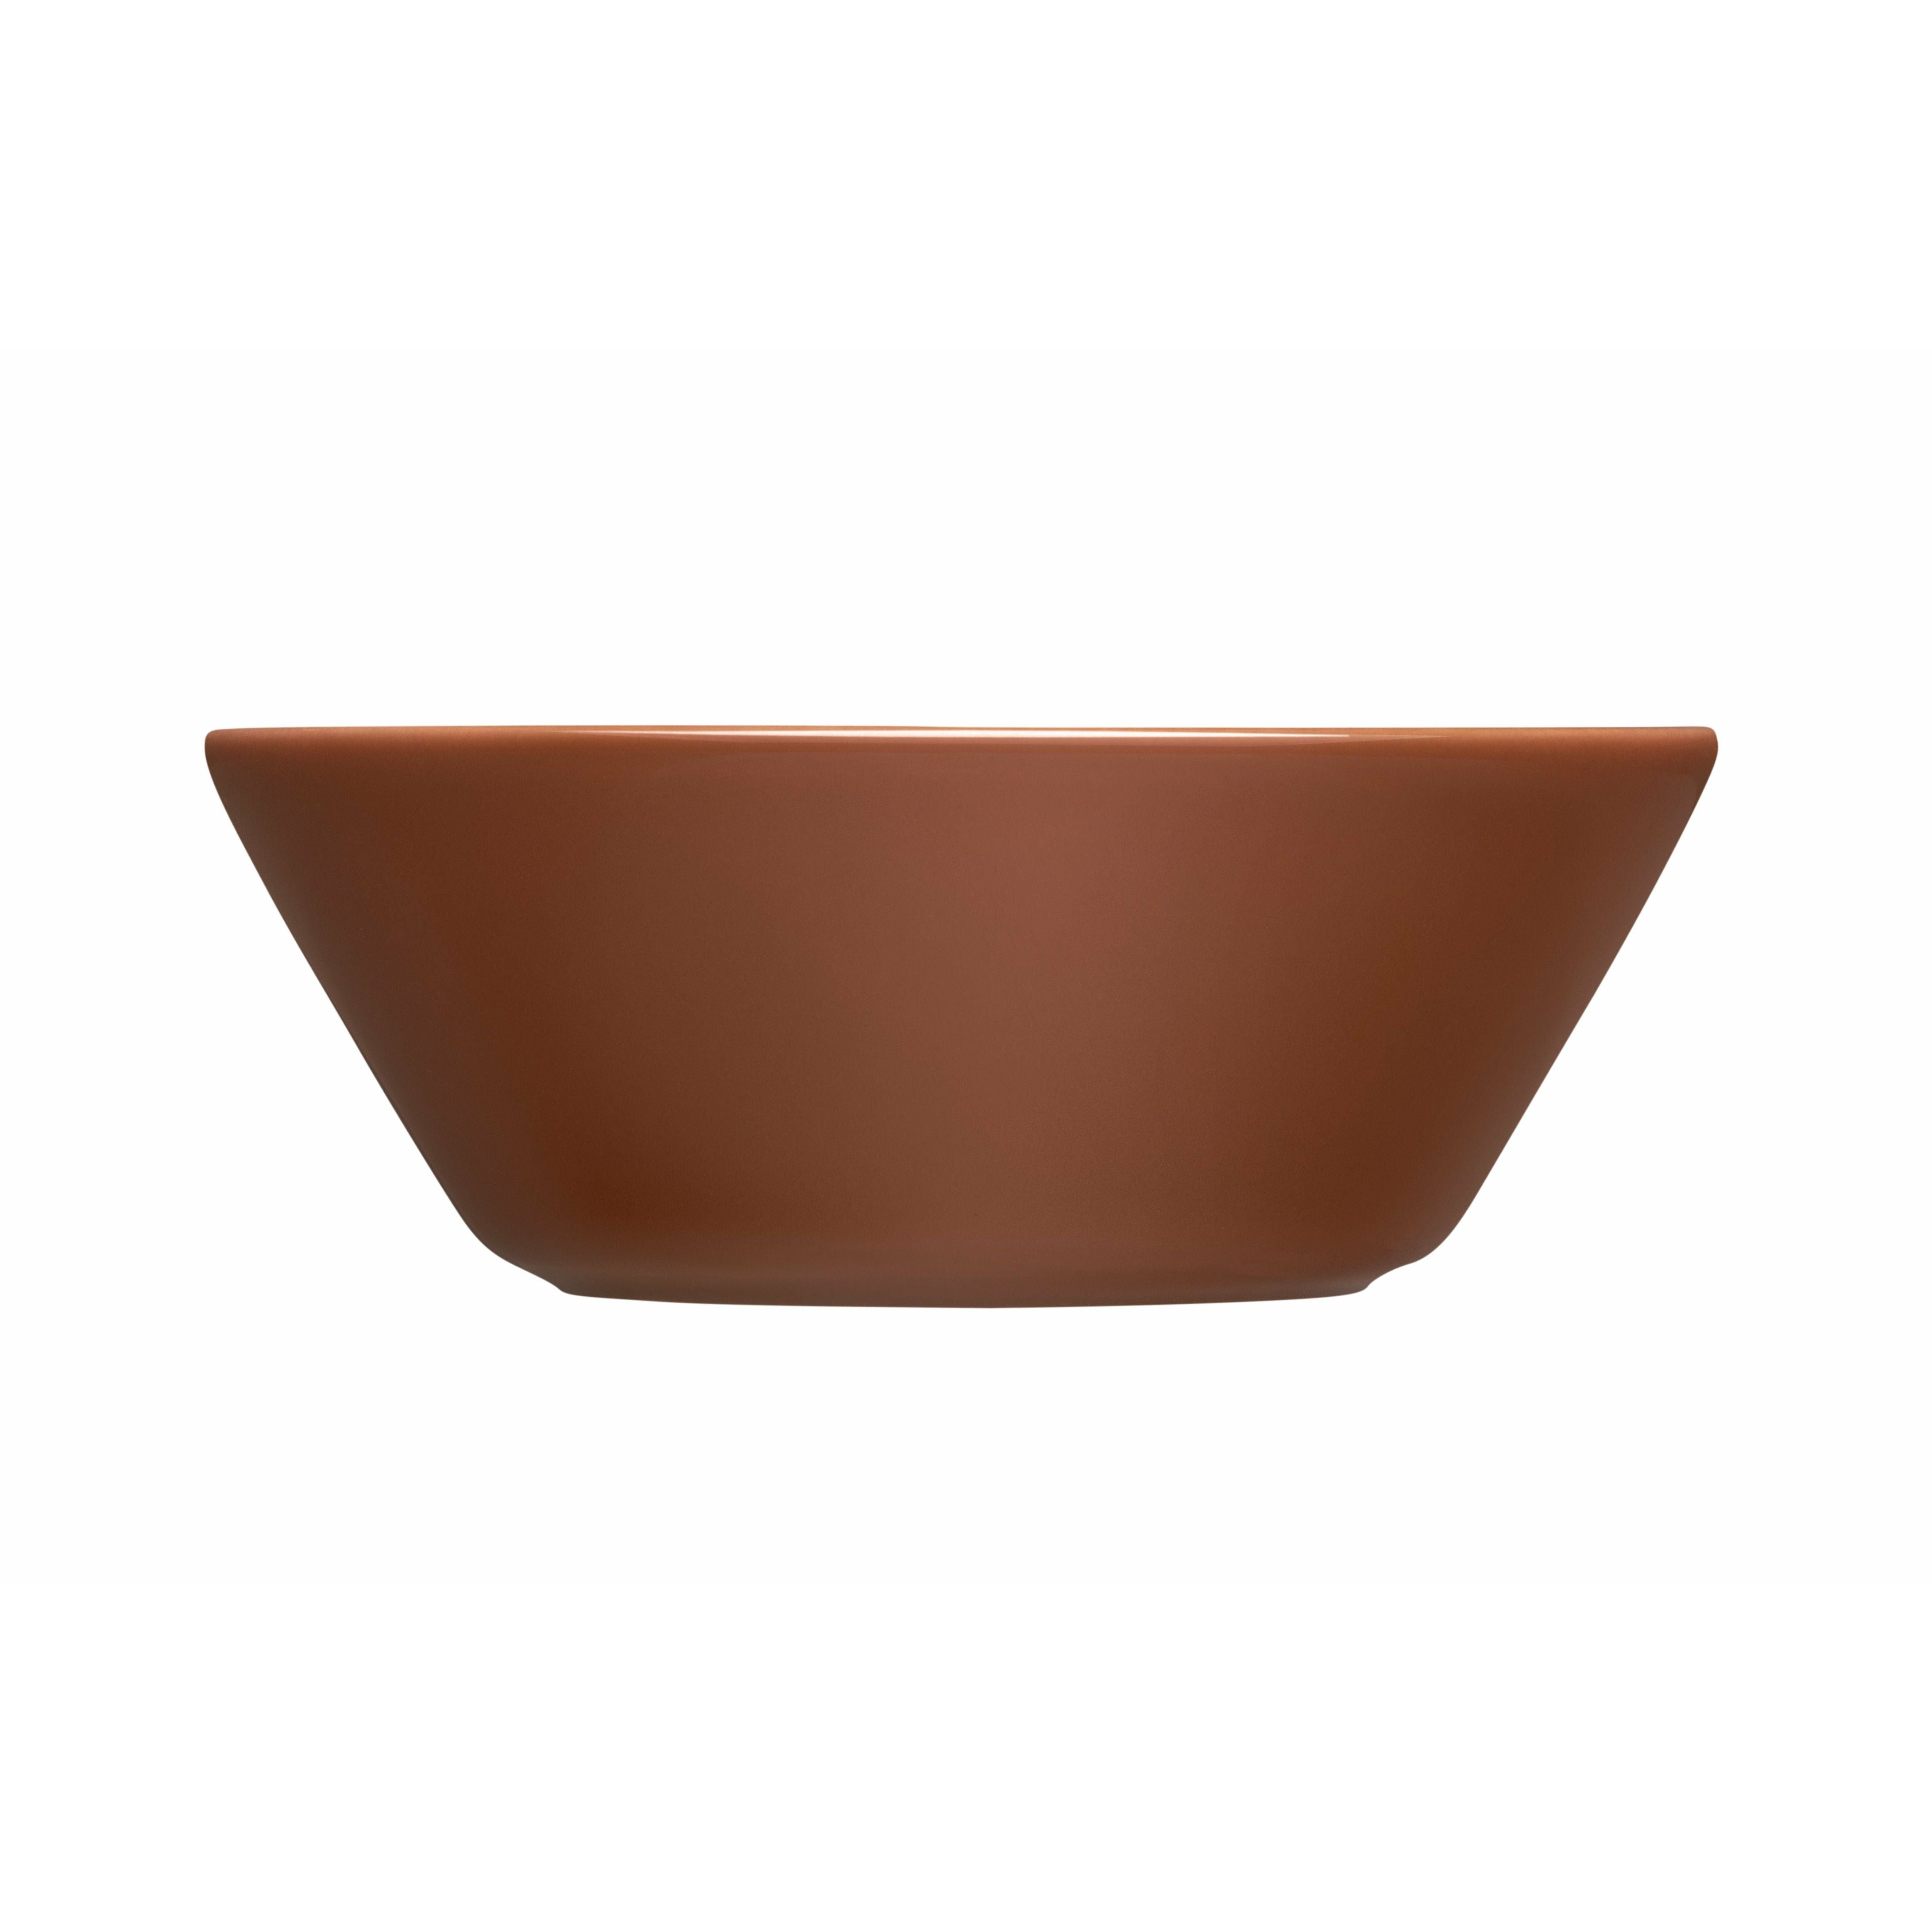 Iittala TEEMA Bowl 15cm, brun vintage